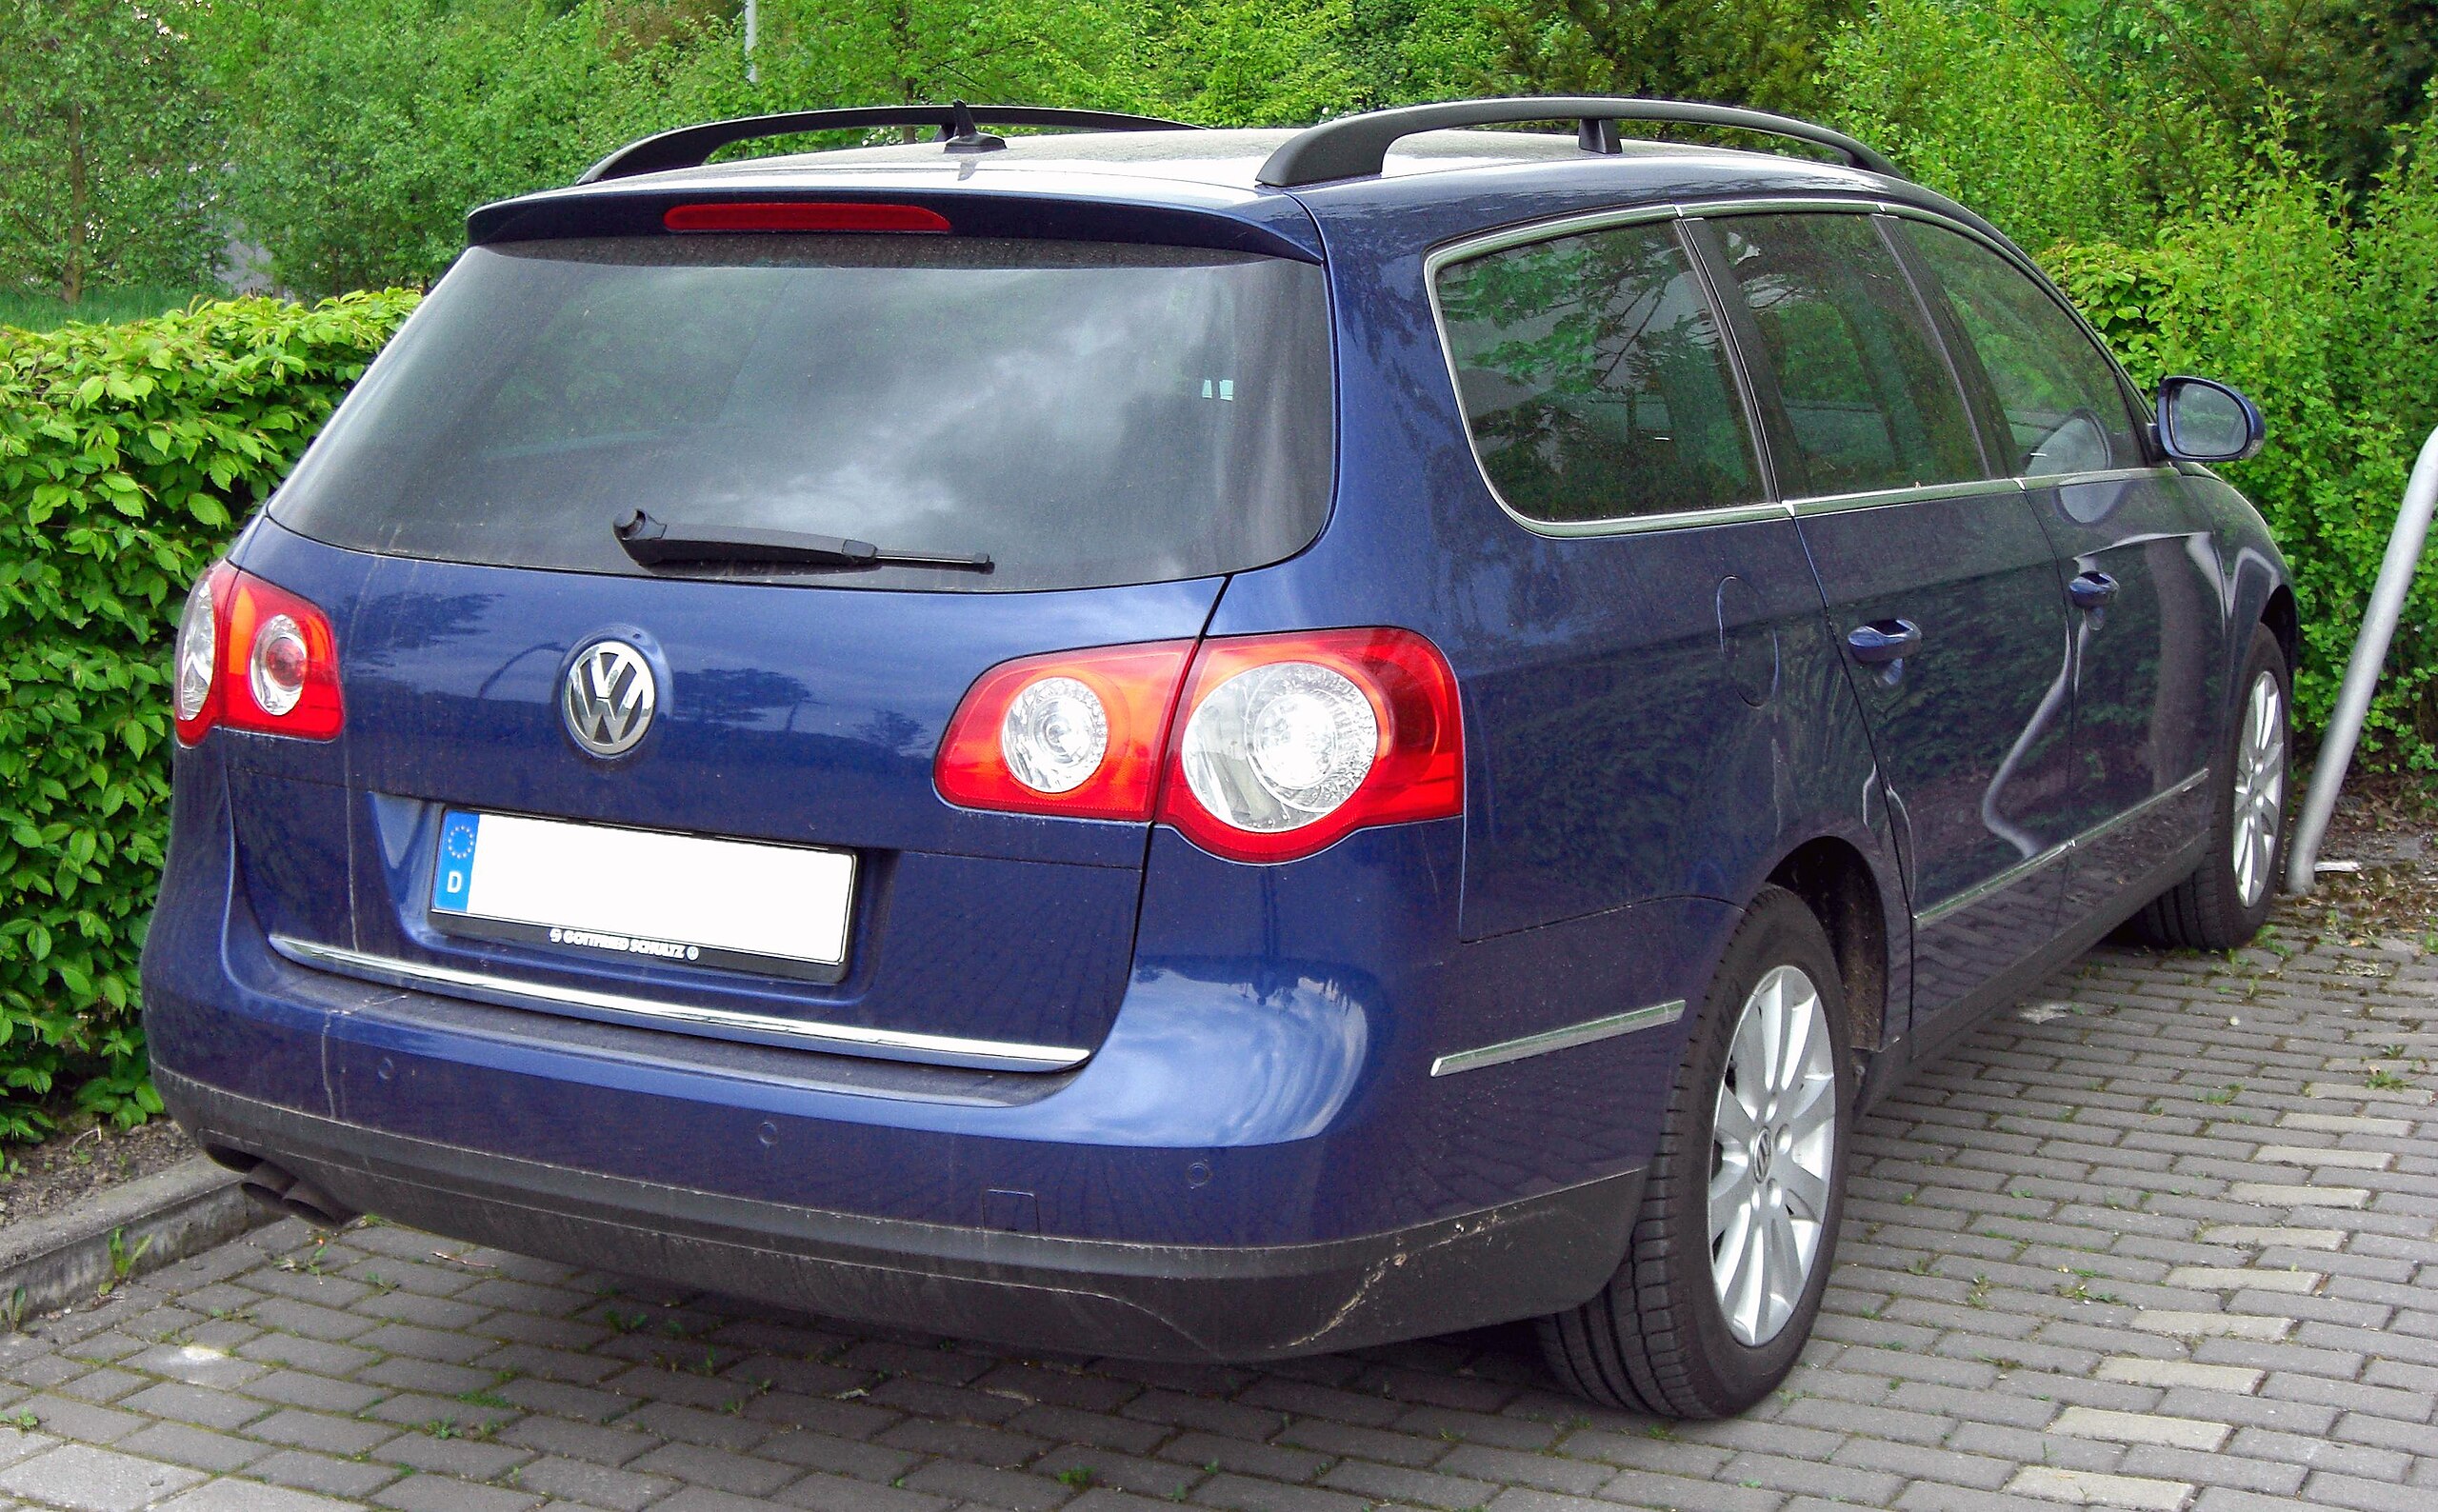 File:VW Passat B6 Variant 20090425 rear.JPG - Wikimedia Commons